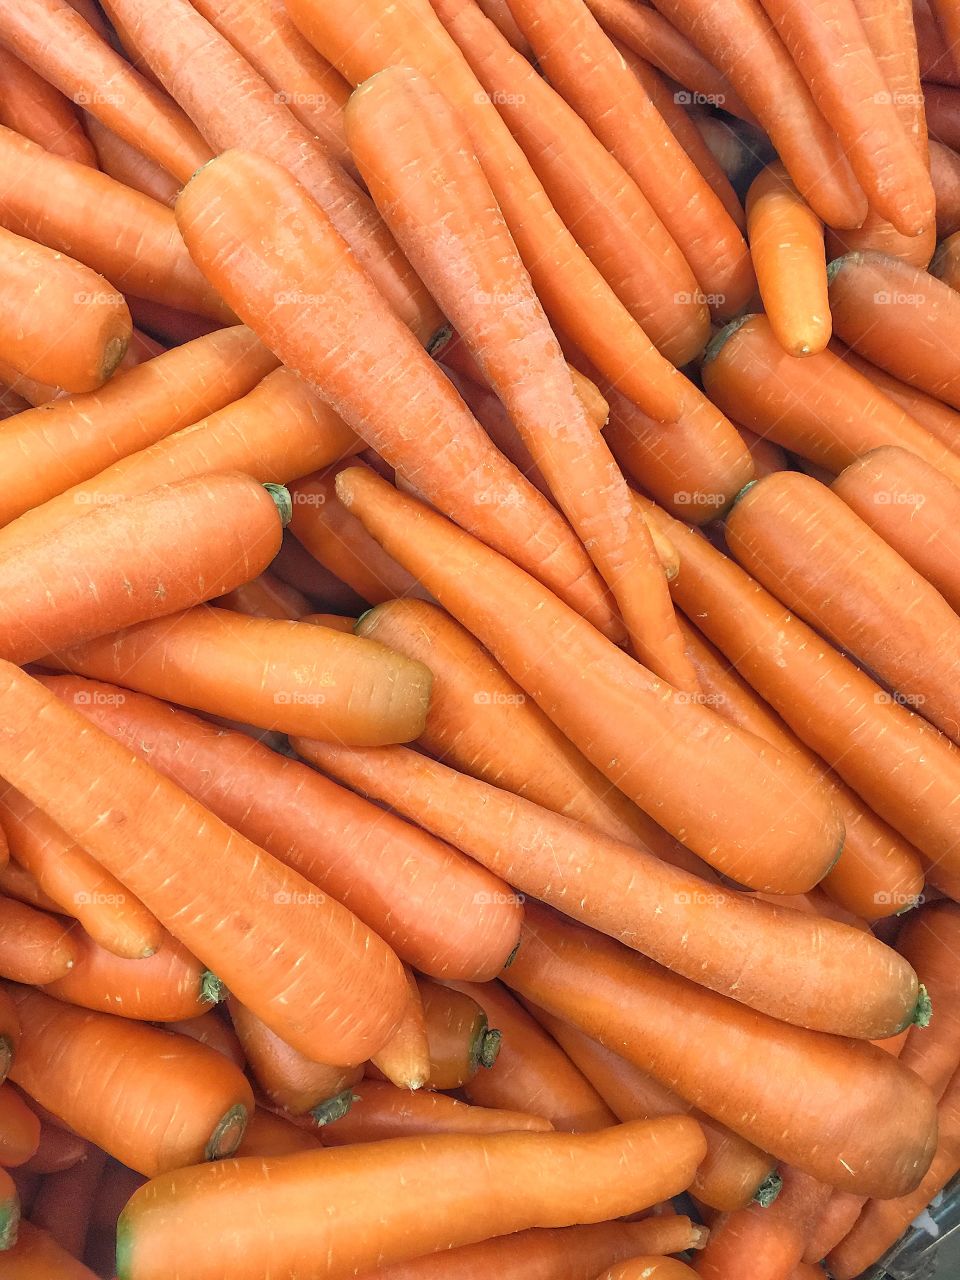 A lot of carrots 🥕 